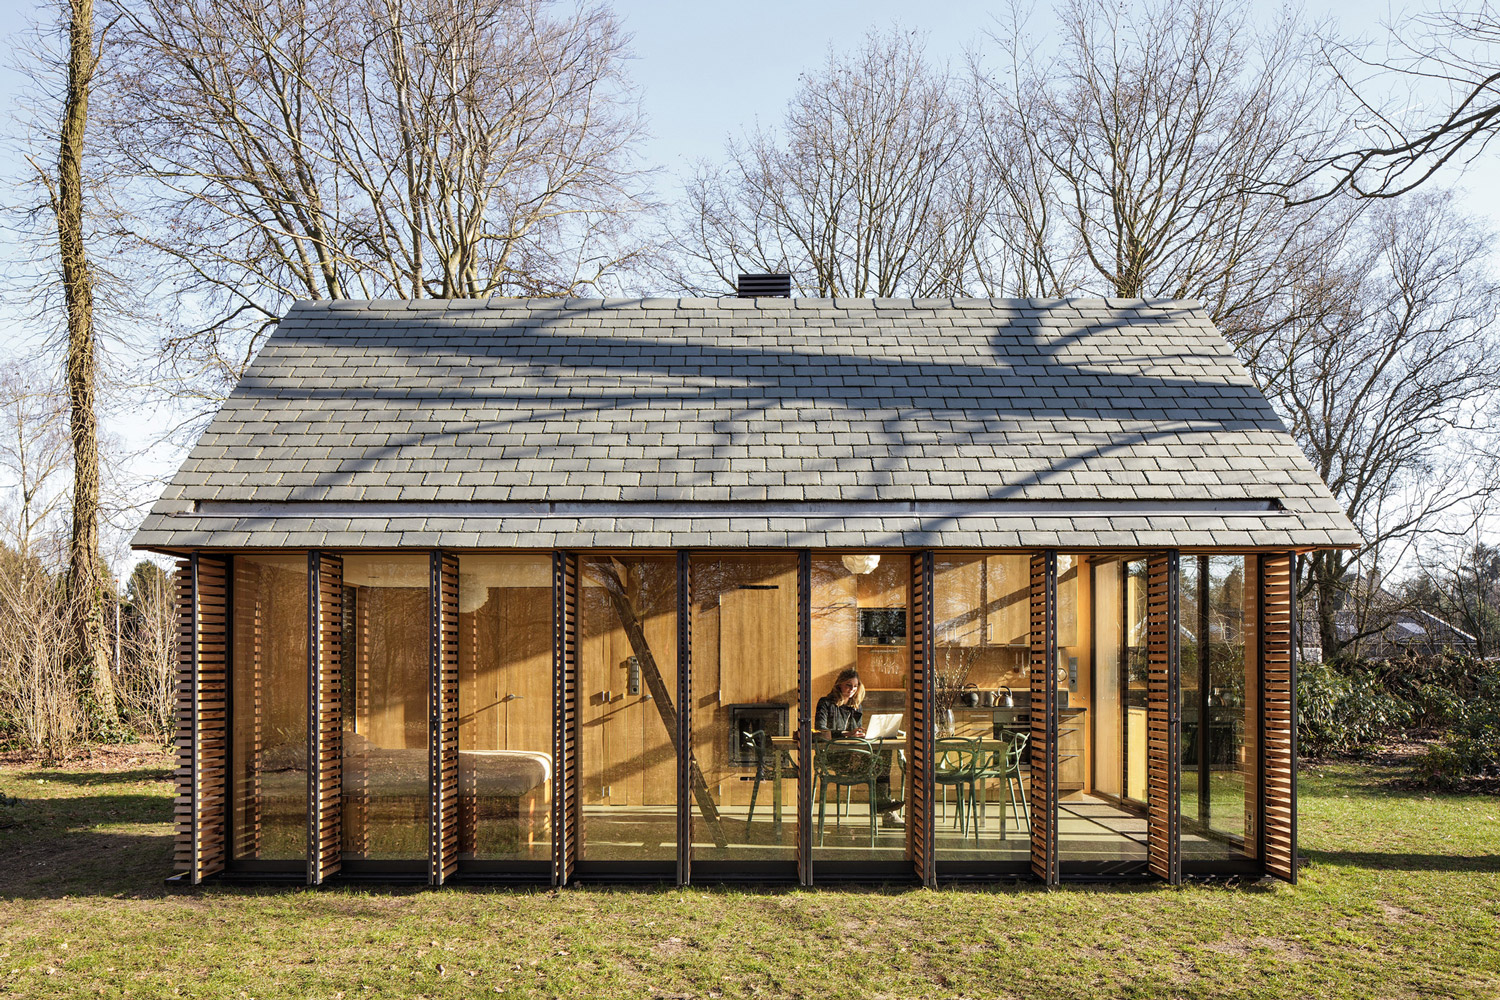 Recreationhouse / Roel van Norel + Zecc Architecten (14)